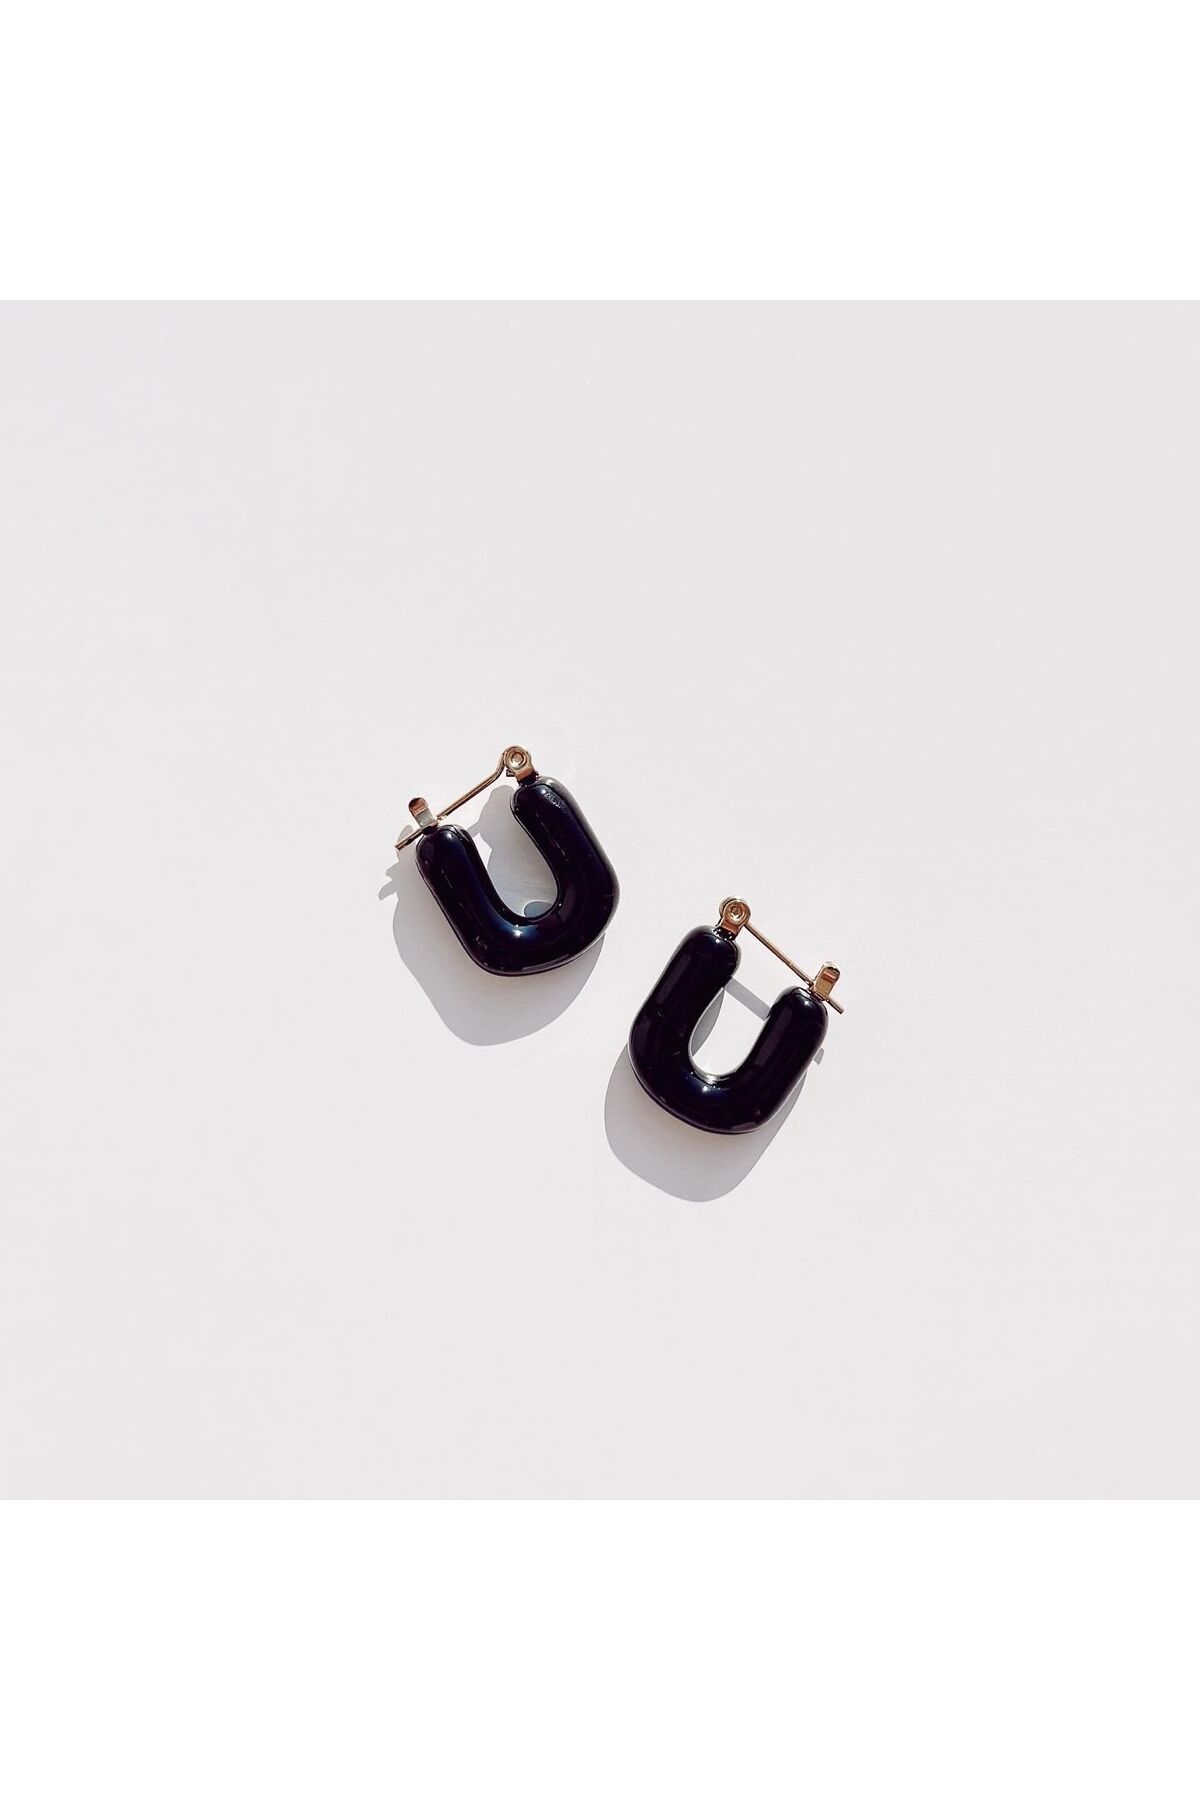 Boise Atelier Mini Black Steel Earring | Çelik Küpe